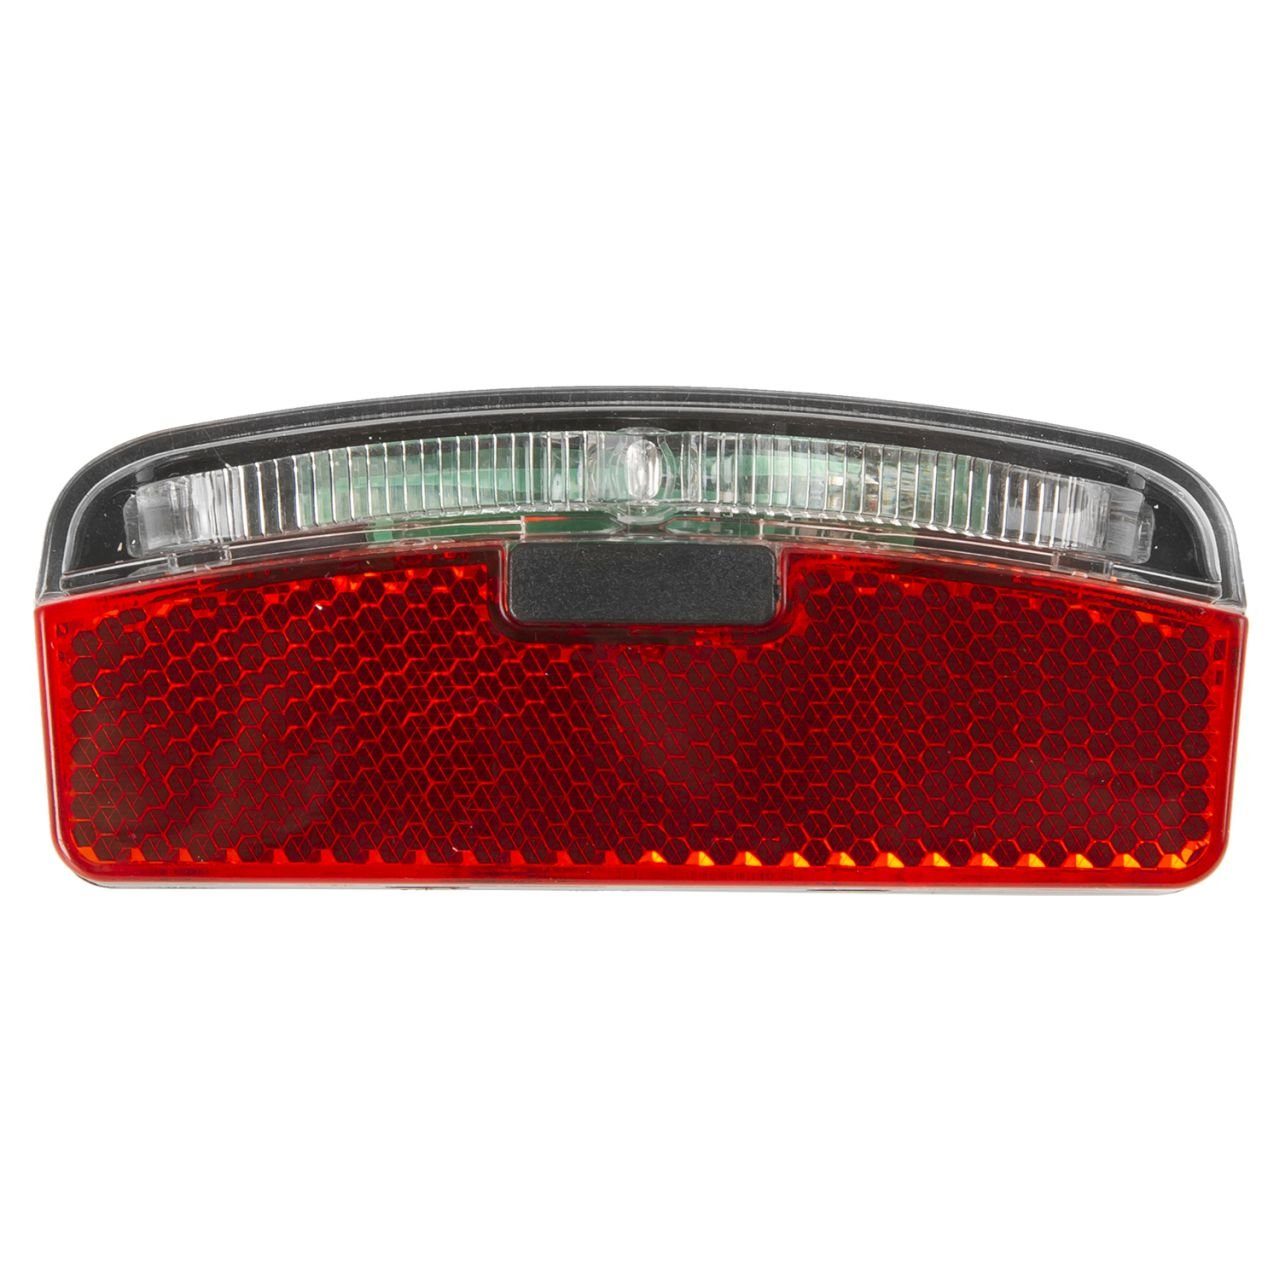 FISCHER Dynamo LED-Rückleuchte für Gepäckträger mit Standlicht, Rücklicht, Beleuchtung (Dynamo), Beleuchtung, Fahrradzubehör